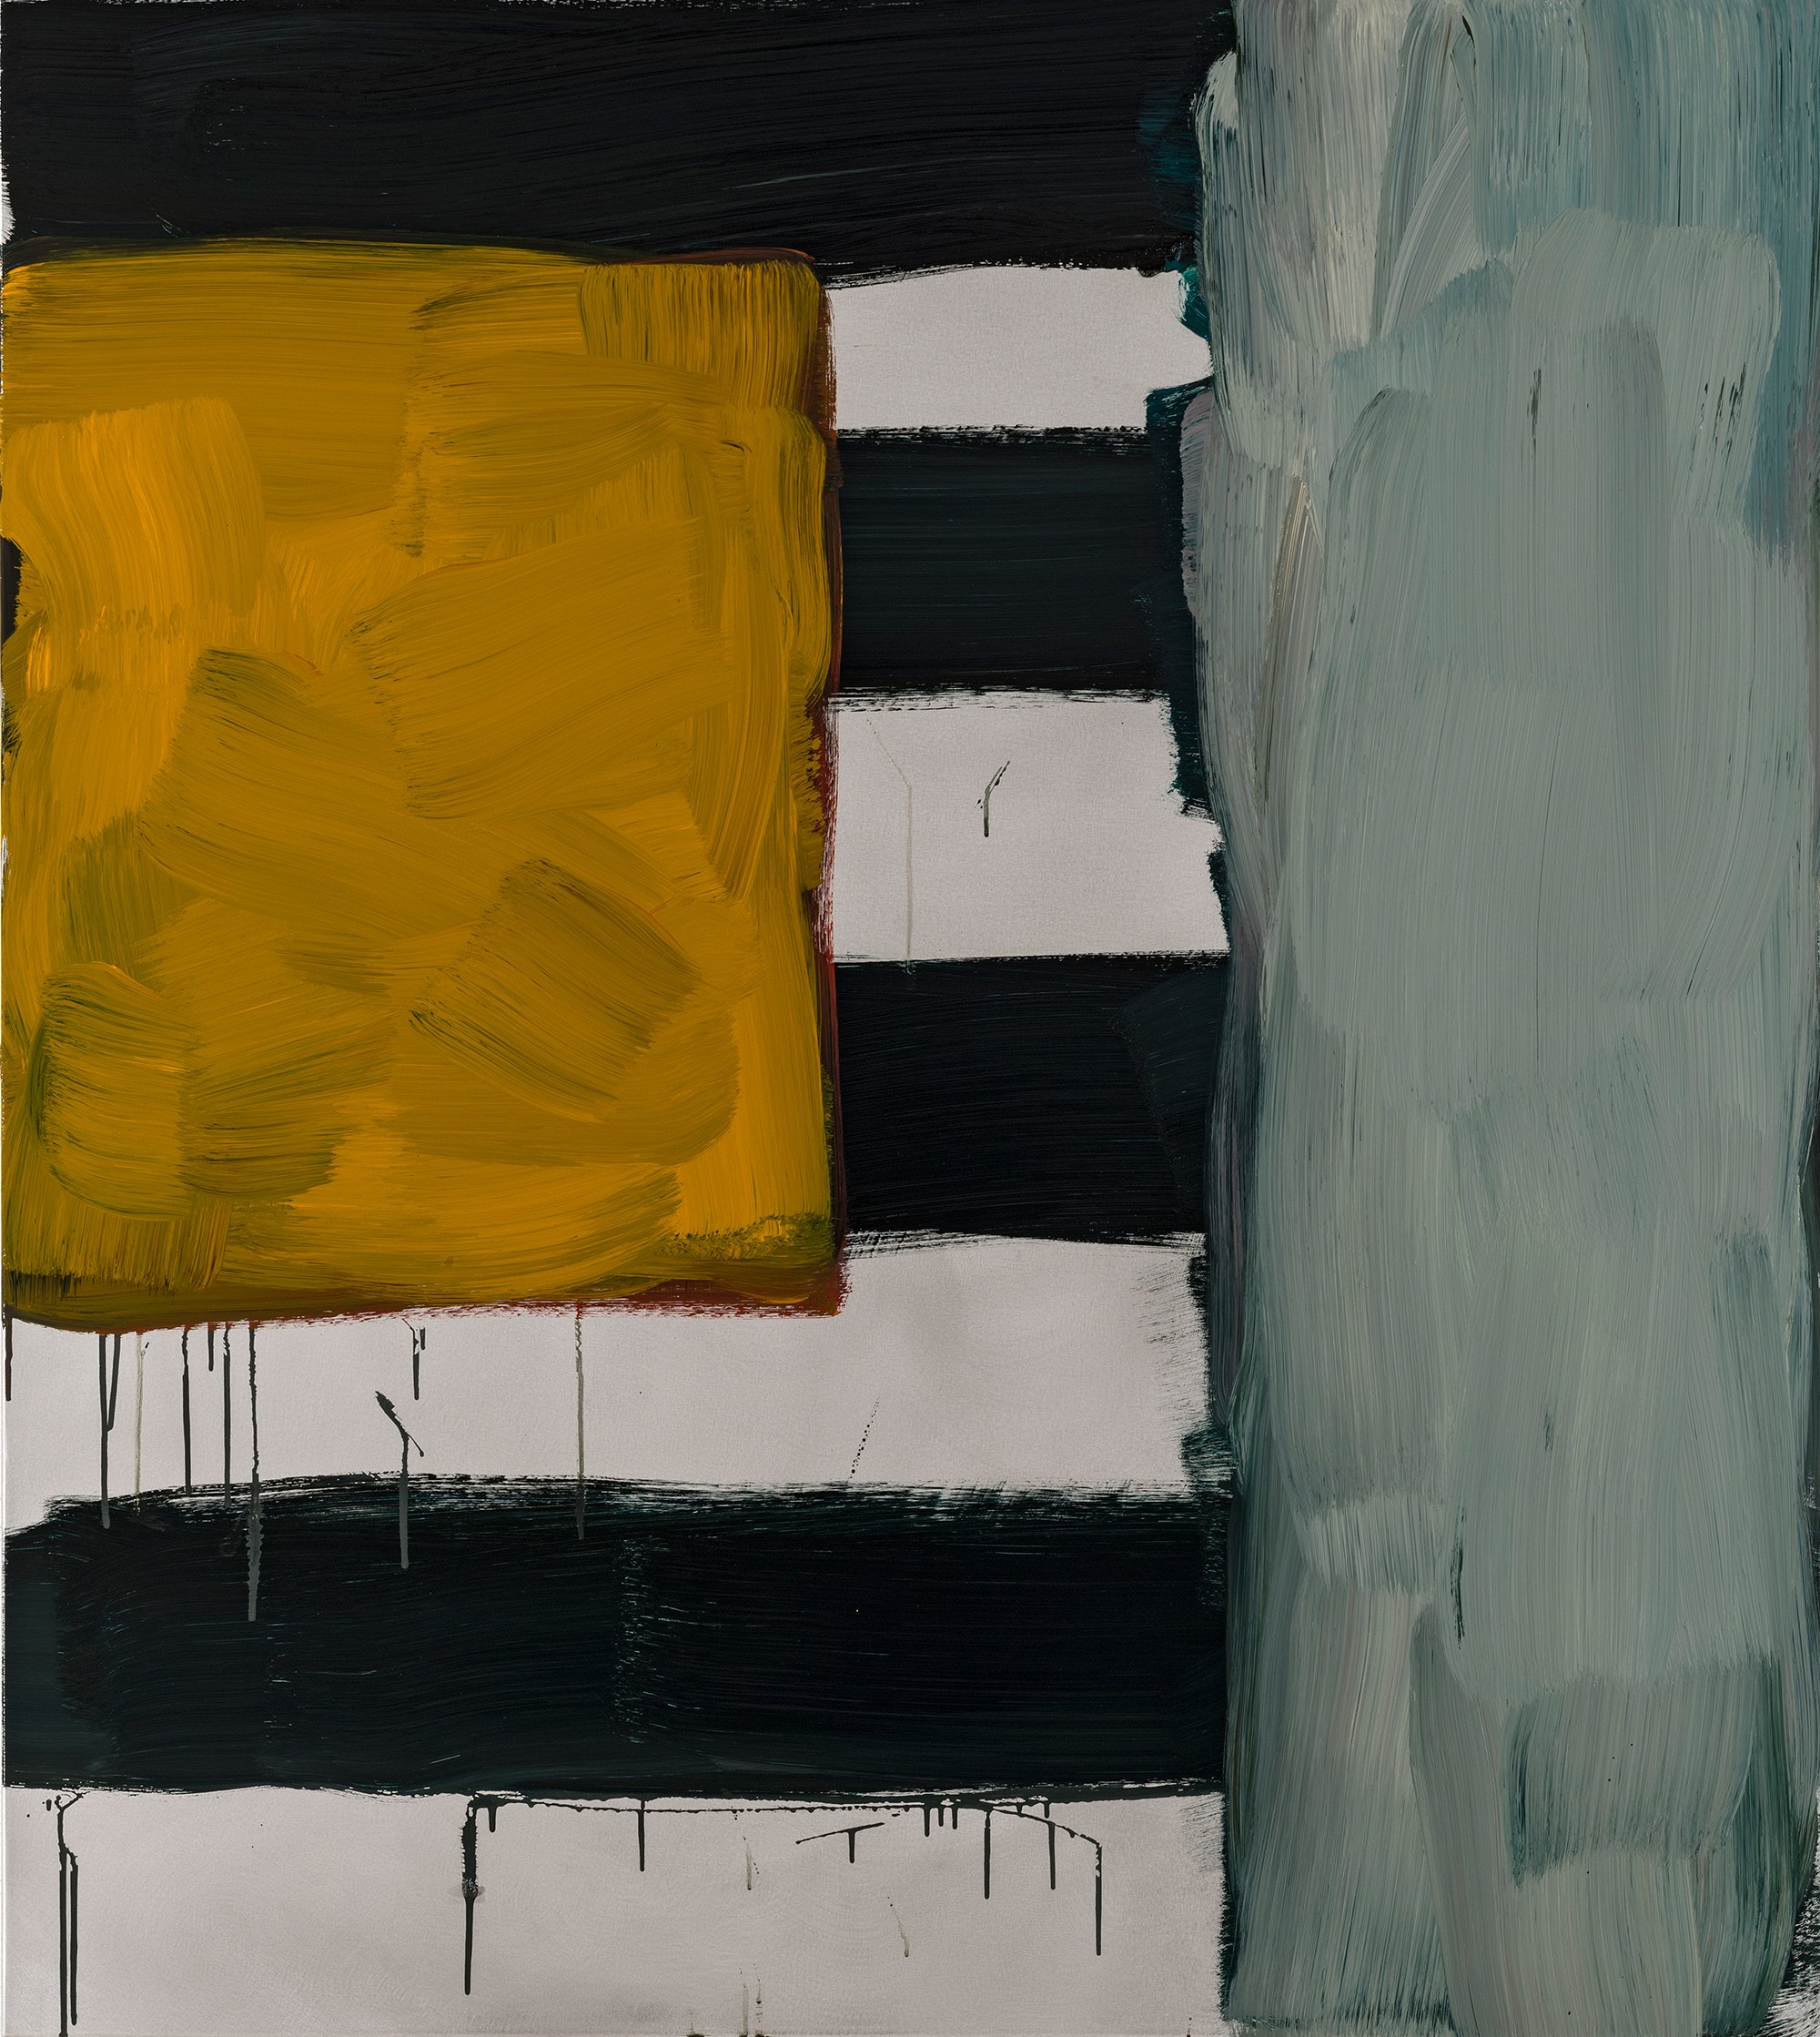 Abbildung des Werks "Window With" des zeitgenössischen Künstlers Sean Scully. Es zeigt gelbe, weiße und schwarze ecke Farbflächen.